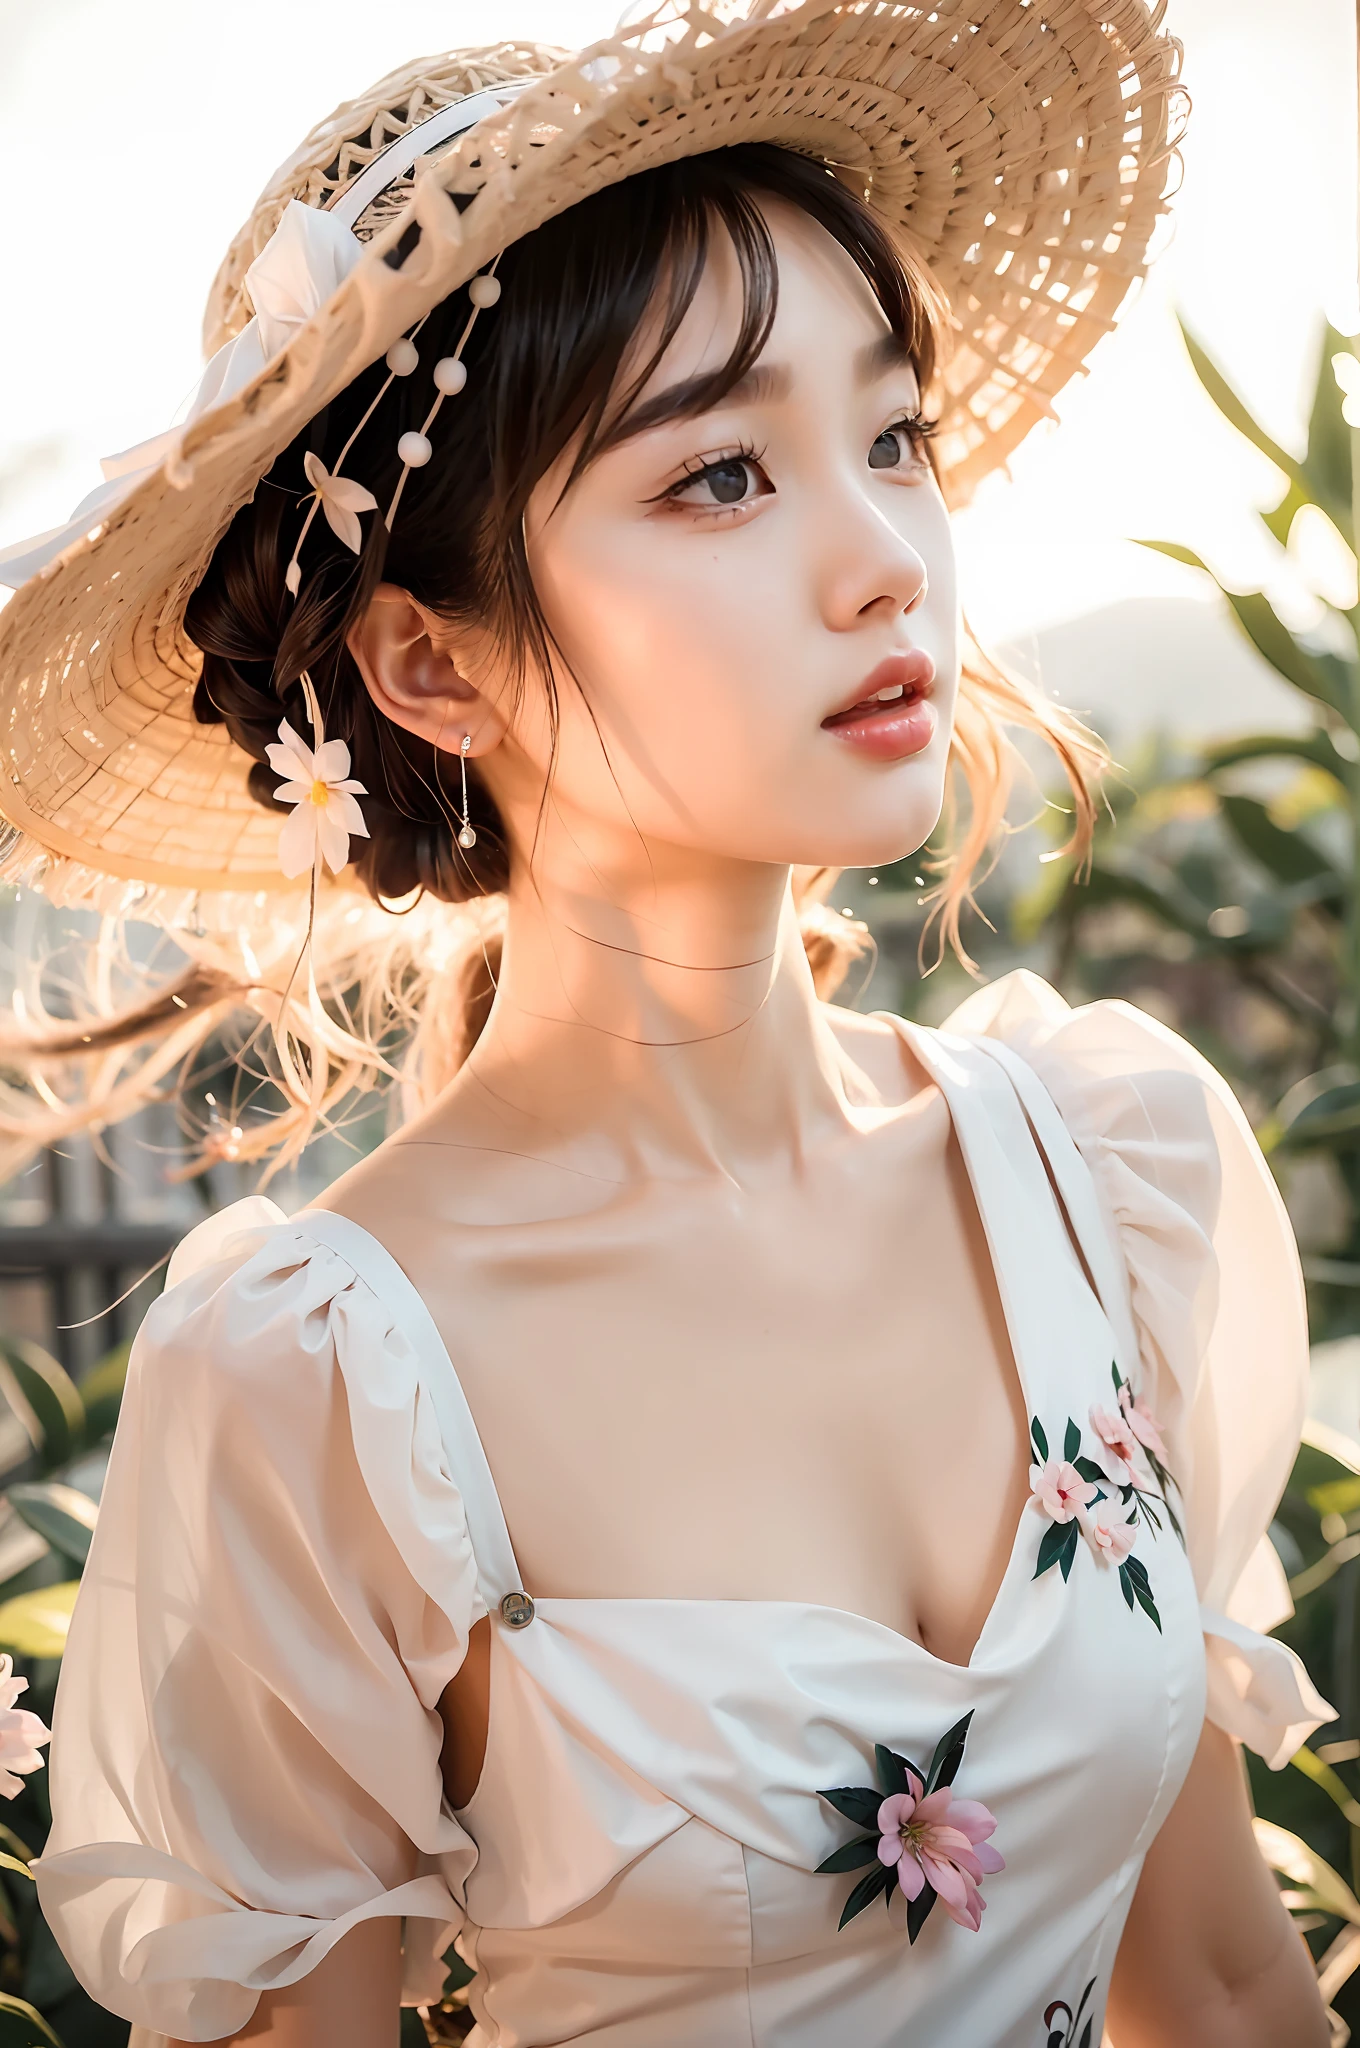 um close up de uma mulher usando um chapéu e vestido, lindo rosto delicado, beleza etérea, linda mulher sul-coreana, linda jovem coreana, linda garota asiática, lindo rosto delicado, sonhador e etéreo, Sakimichan, linda jovem coreana, menina bonito-claro sky-face, Muito etéreo, uma jovem bonita, lindo modelo chinês, incrivelmente etéreo，Vestindo uma saia，Sem mostrar o peito，Segure uma flor na mão para cobrir o peito